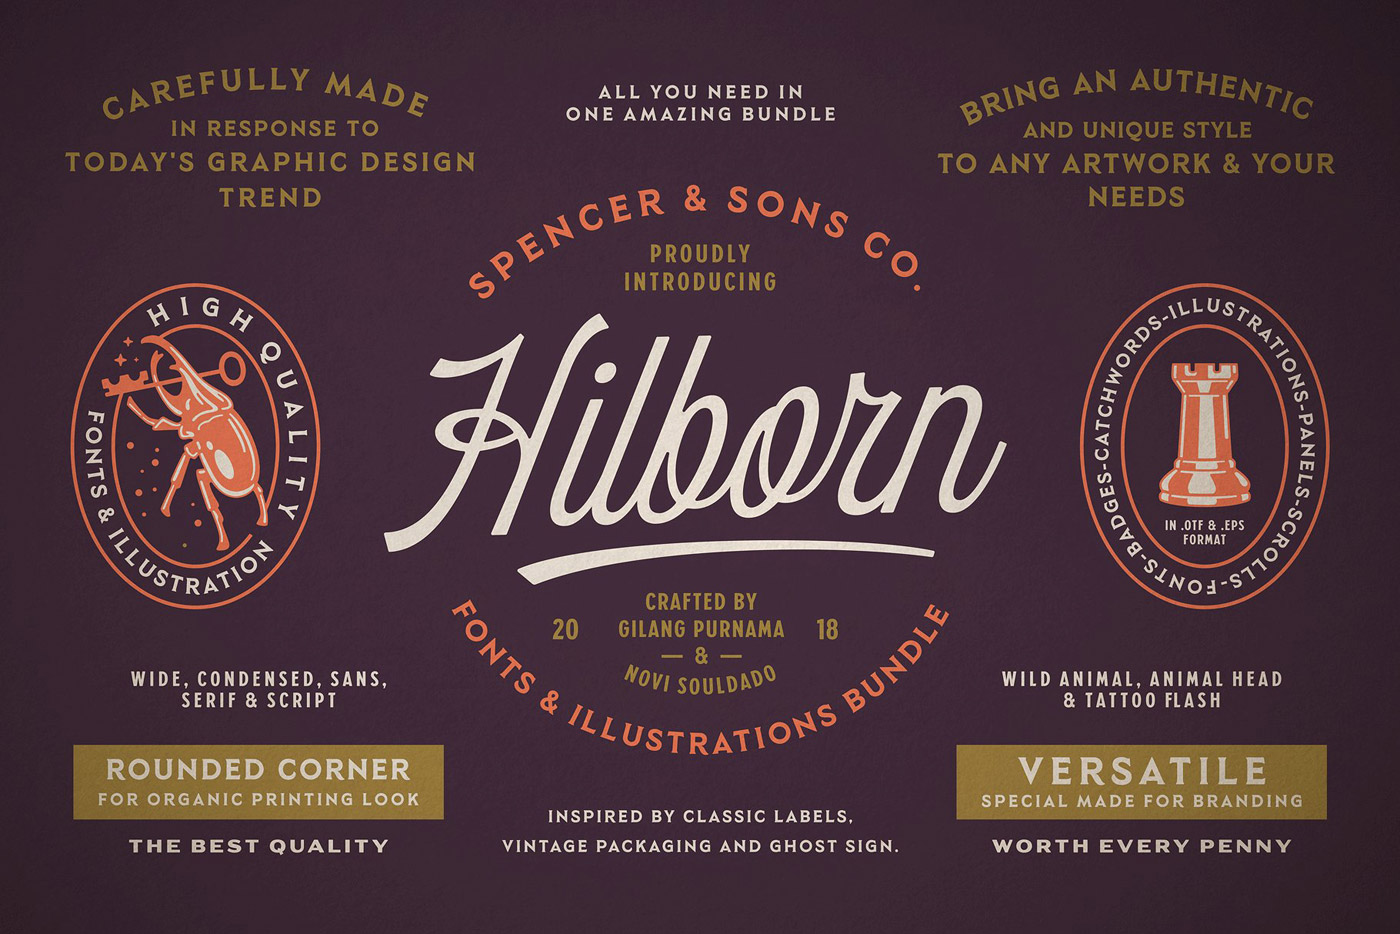 Spencer & Sons Hilborn fonts bundle.